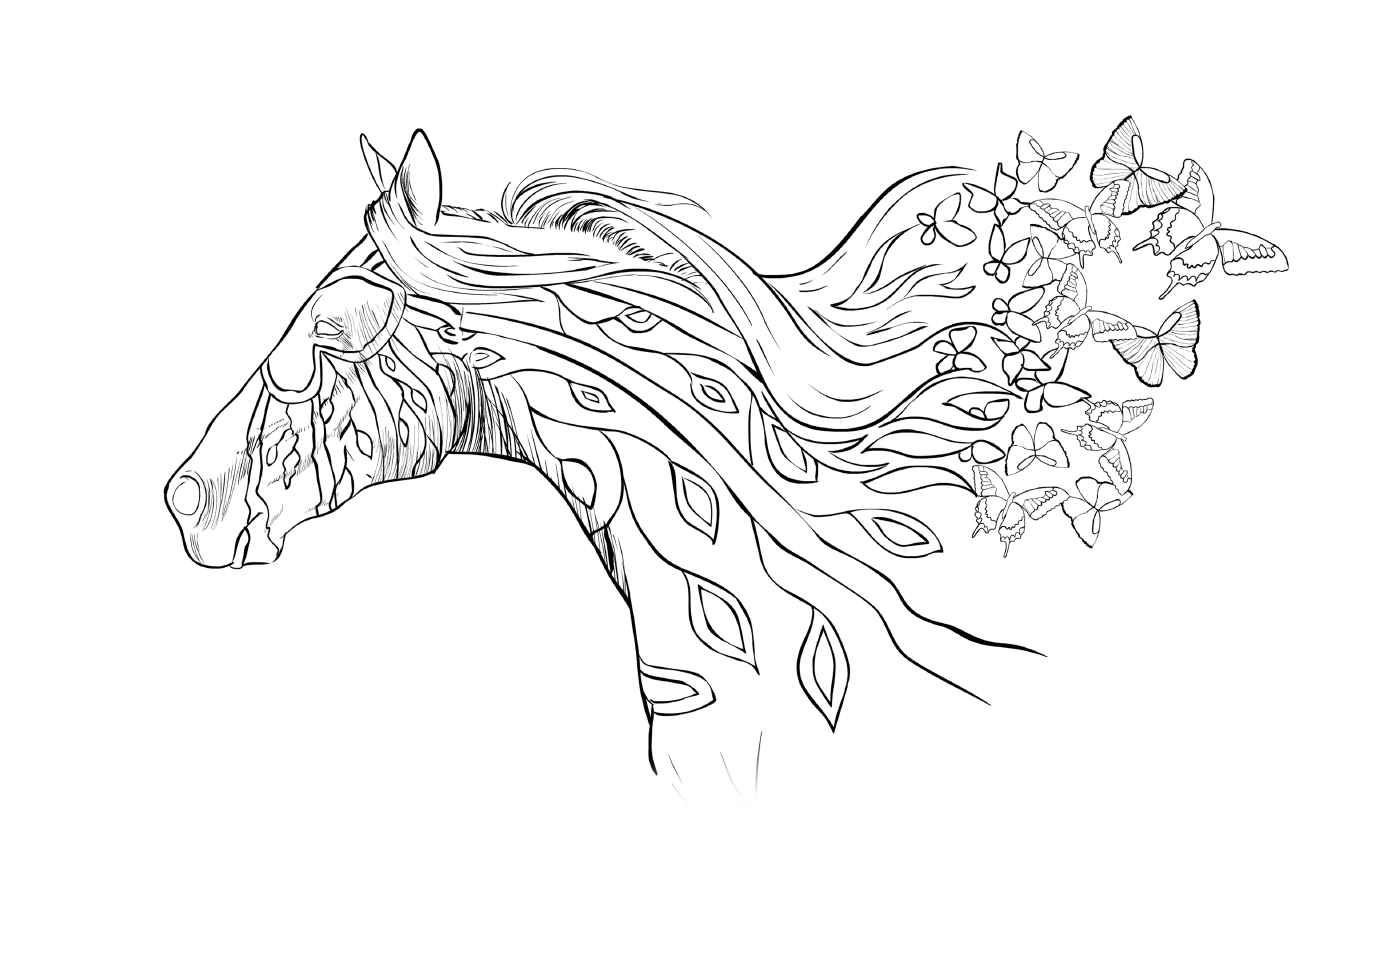  Голова лошади с цветами в волосах 